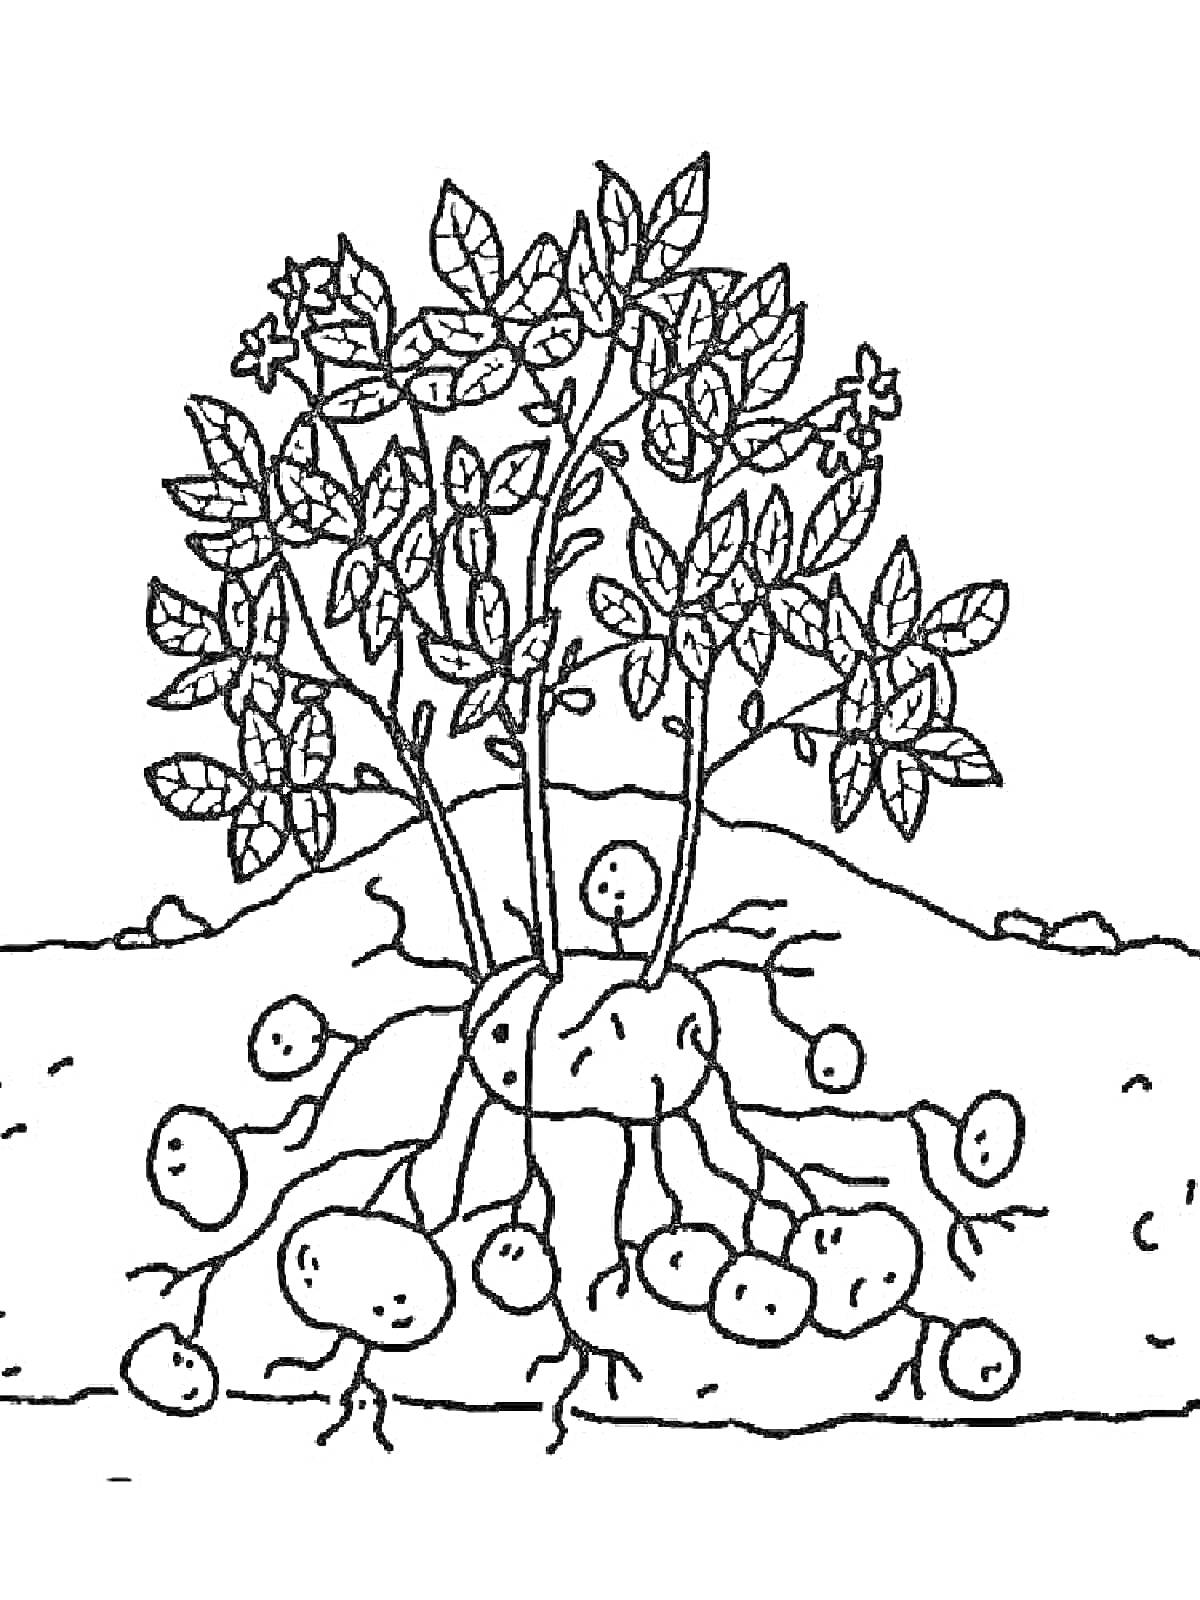 Раскраска Картофельное растение с клубнями под землей